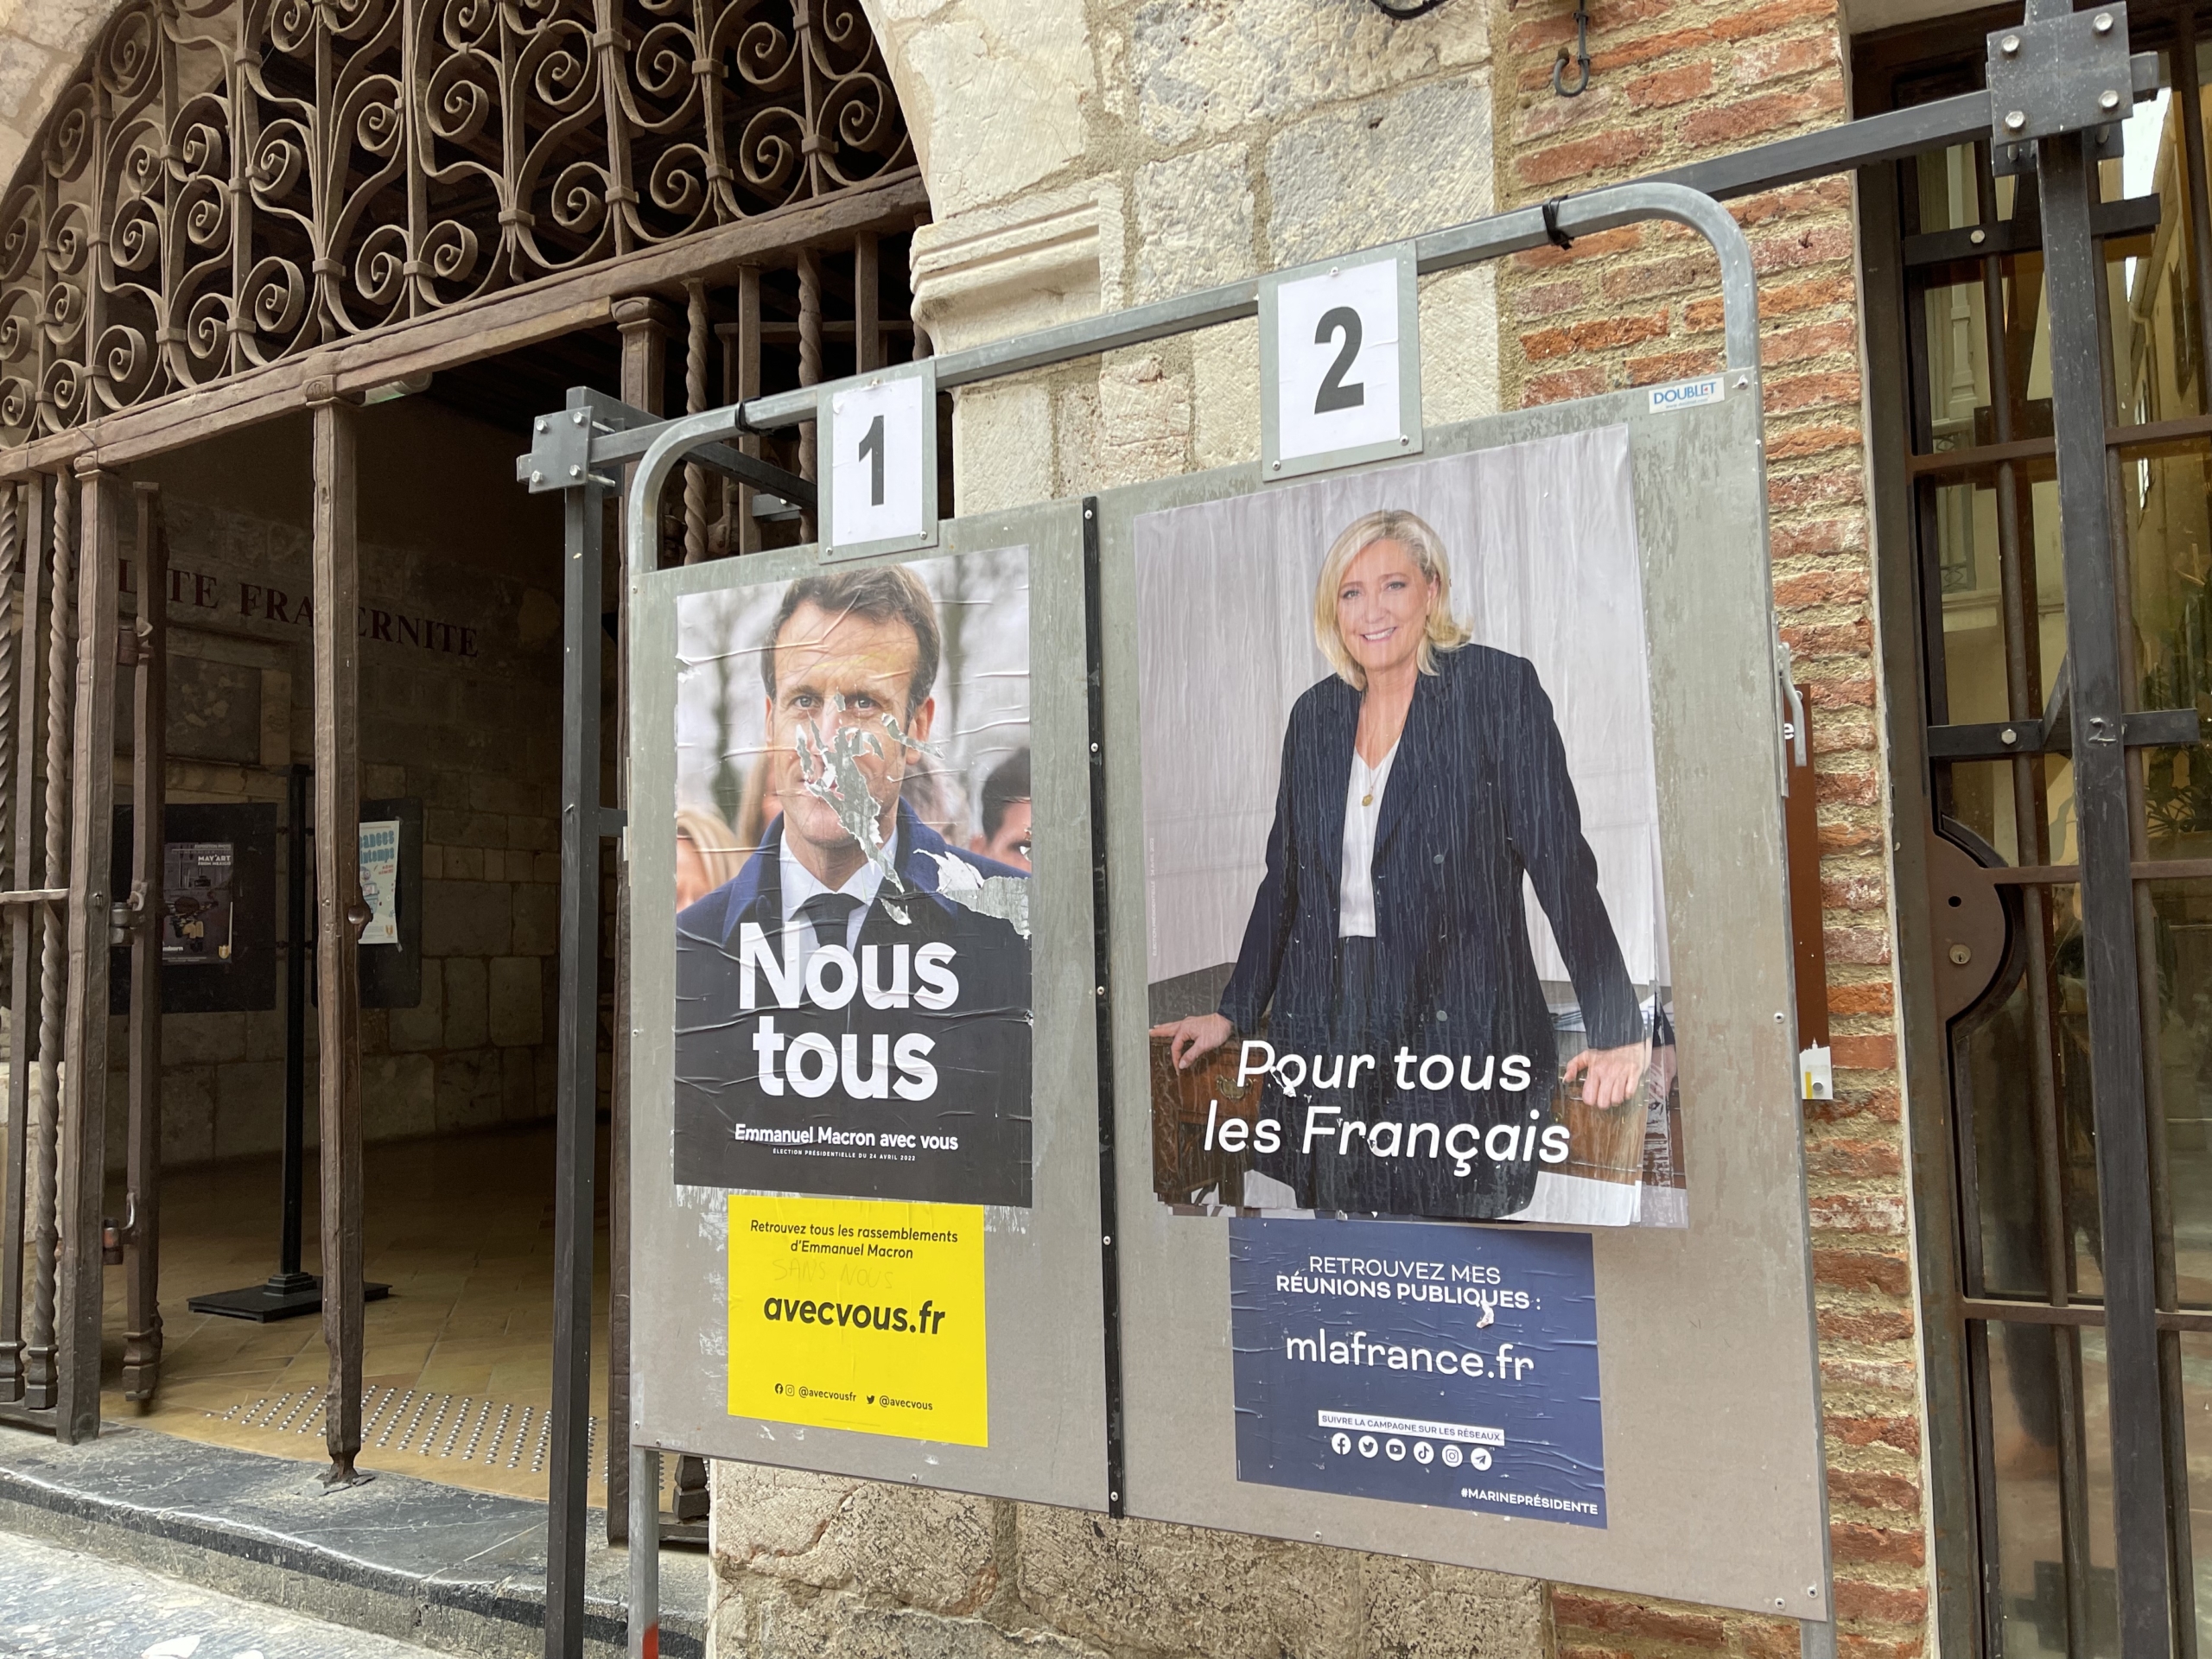 Panell electoral de Macron (esguerrat) amb el de Le Pen a l'entrada de l'Ajuntament de Perpinyà/Quico Sallés